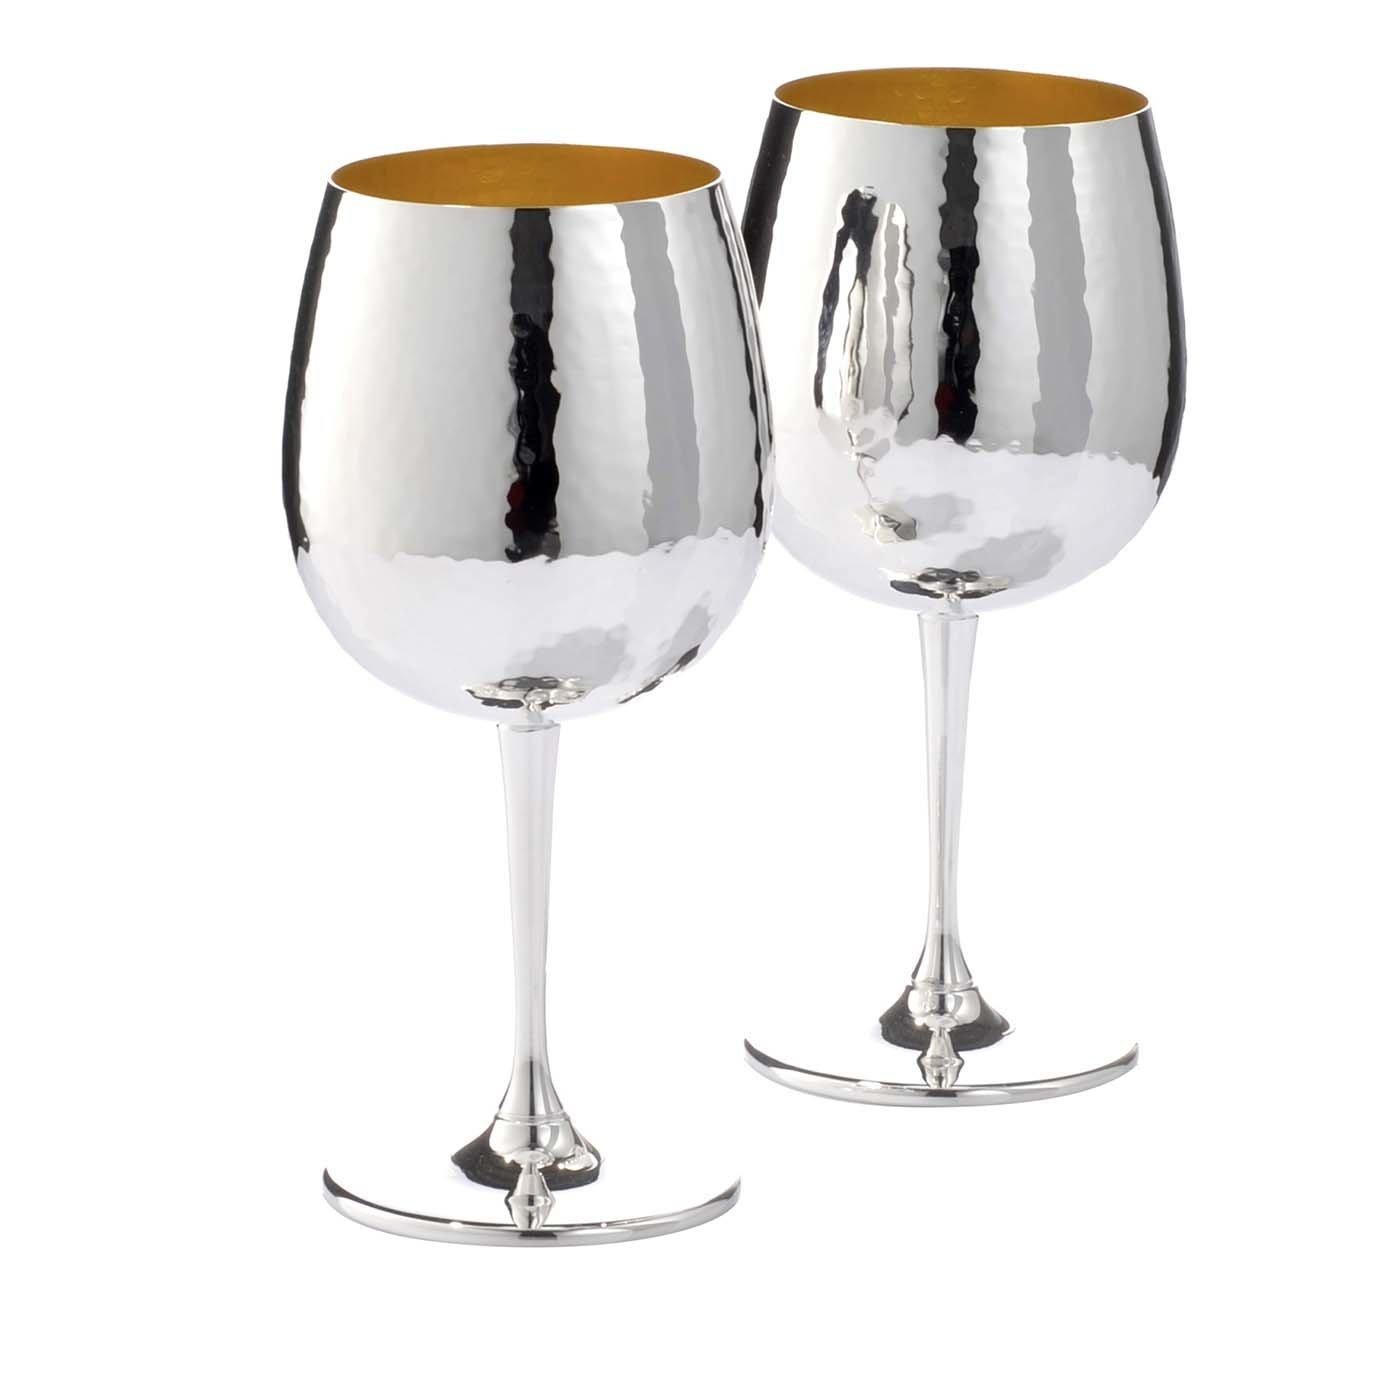 Este sofisticado juego de dos copas de vino realzará cualquier mesa con la brillante elegancia de la plata y una silueta perfectamente equilibrada. Diseñadas para vinos tintos, estas copas chapadas en plata con interior dorado presentan una